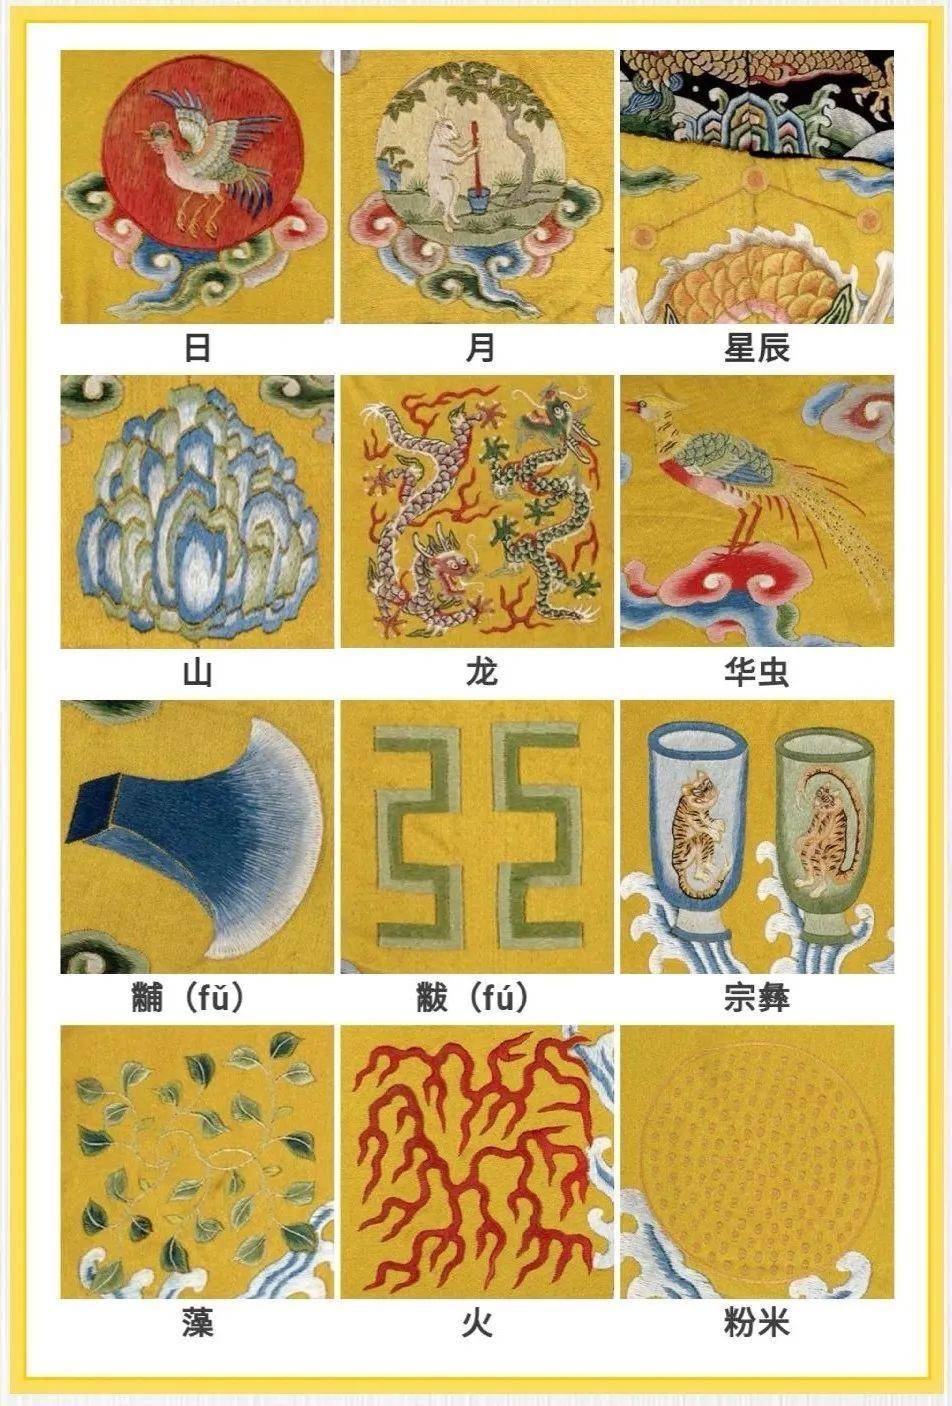 舜帝提出把12种图案——史称"十二章纹",制作在帝王所穿的冕服之上.